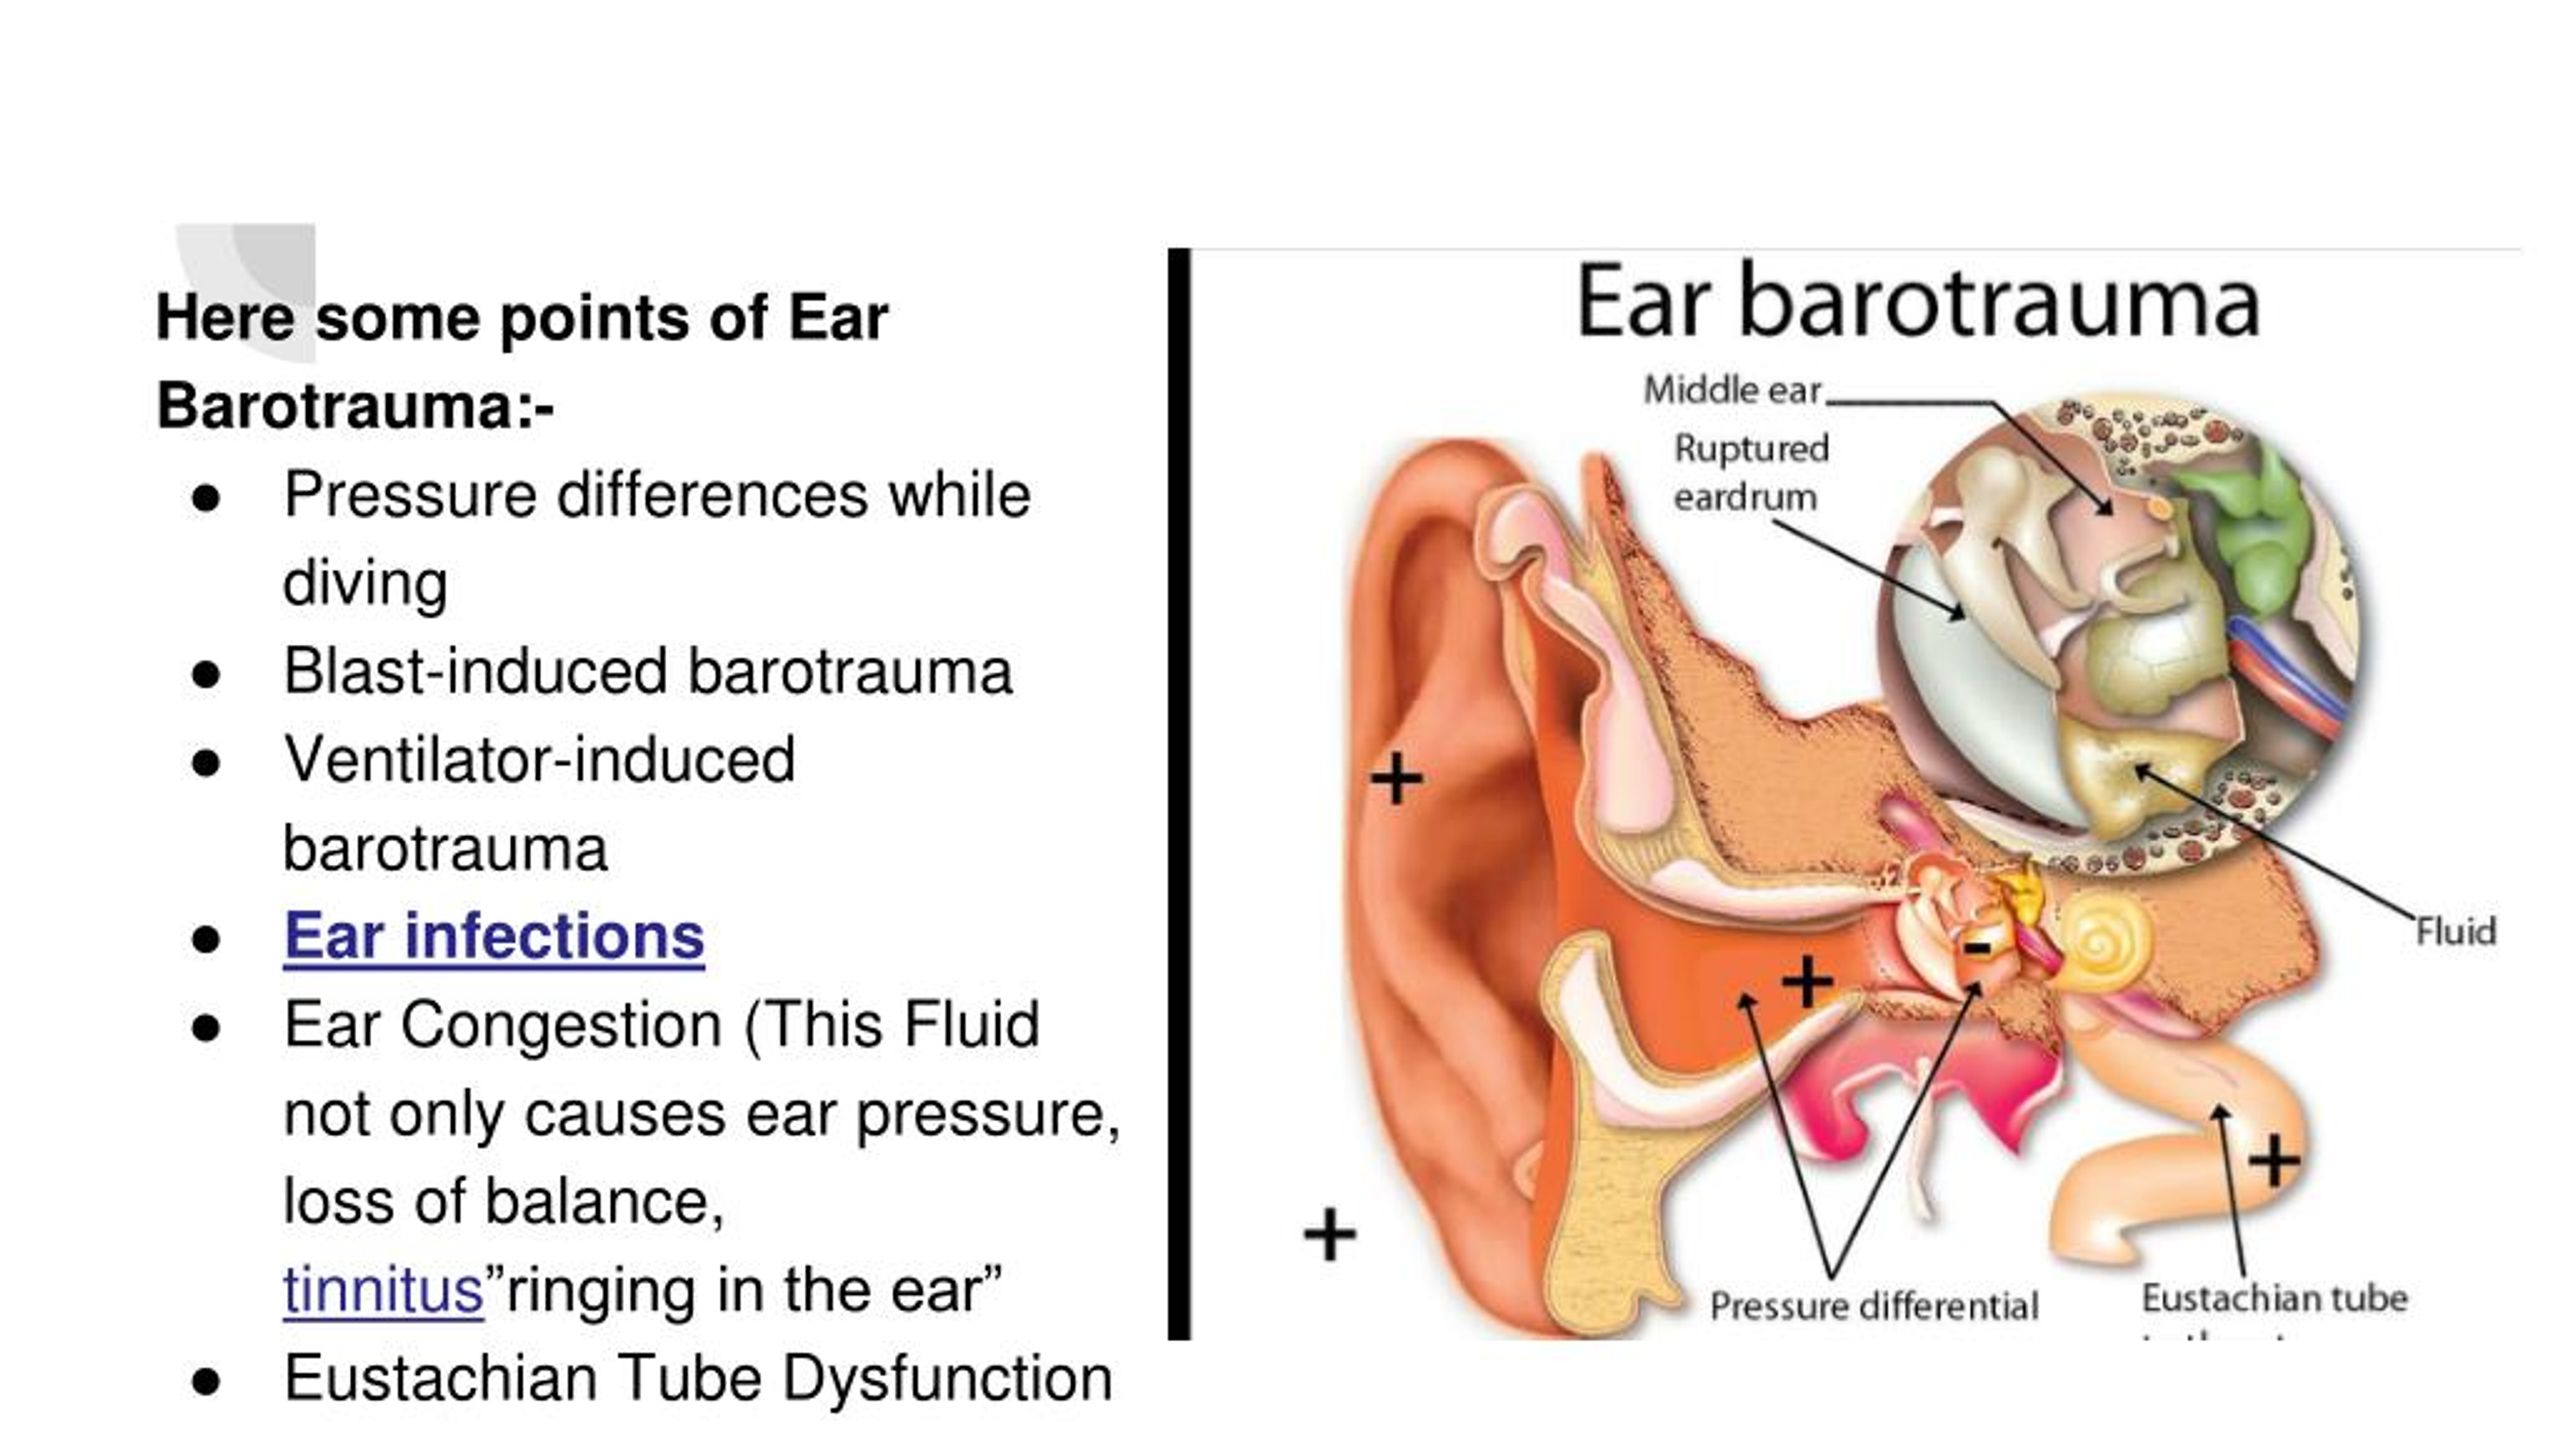 barotrauma ear mri